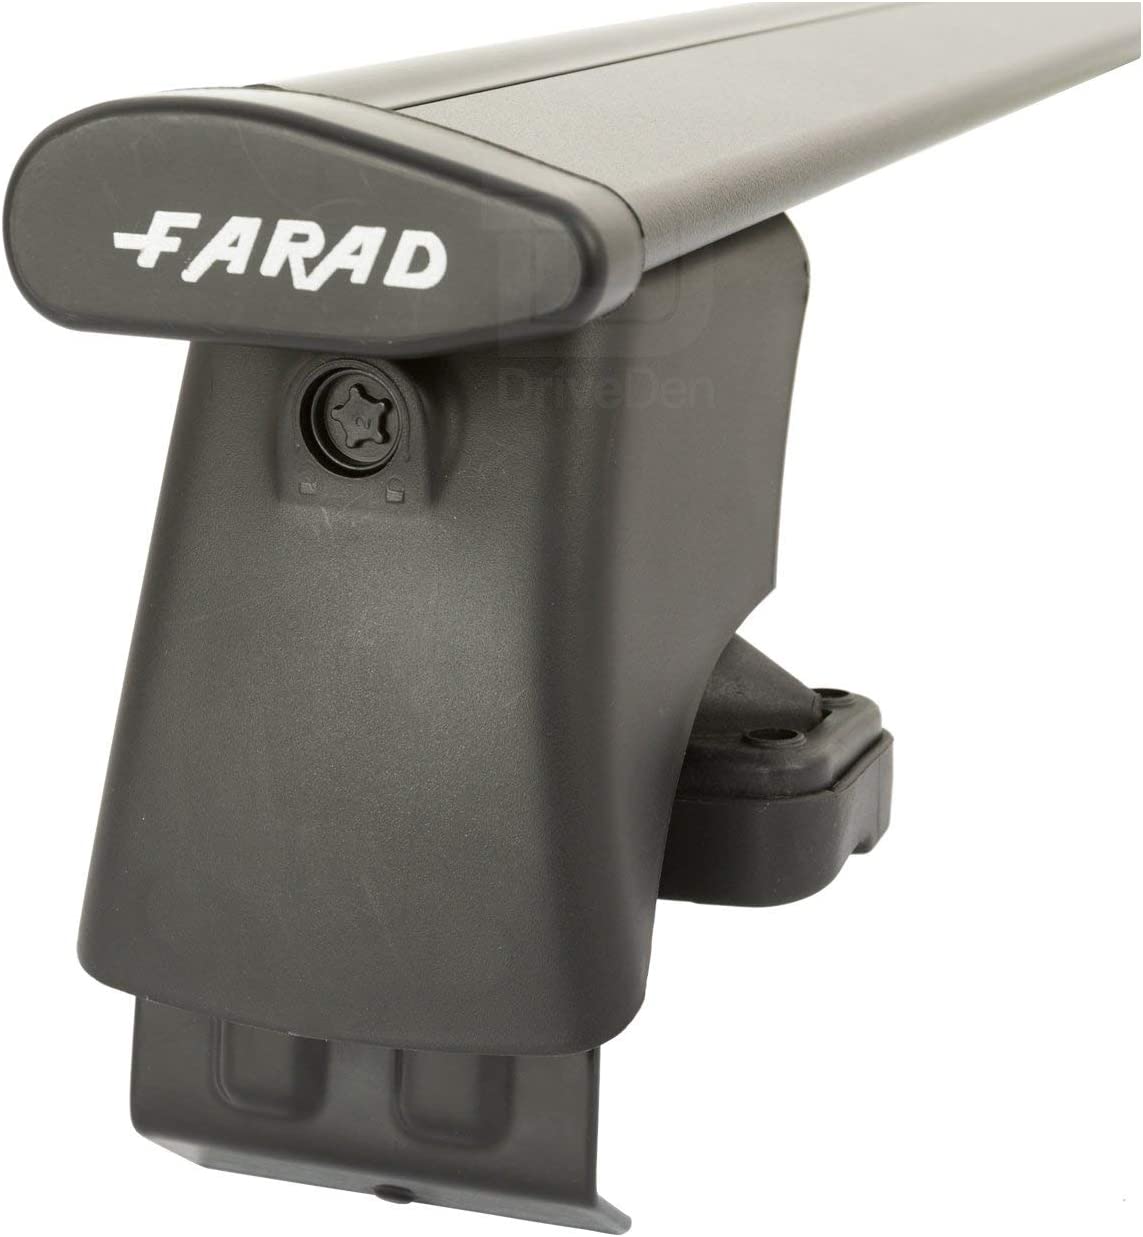 FARAD-Kit H2 per barre portatutto - Smart Smart 1998-2007 (senza corrimano)